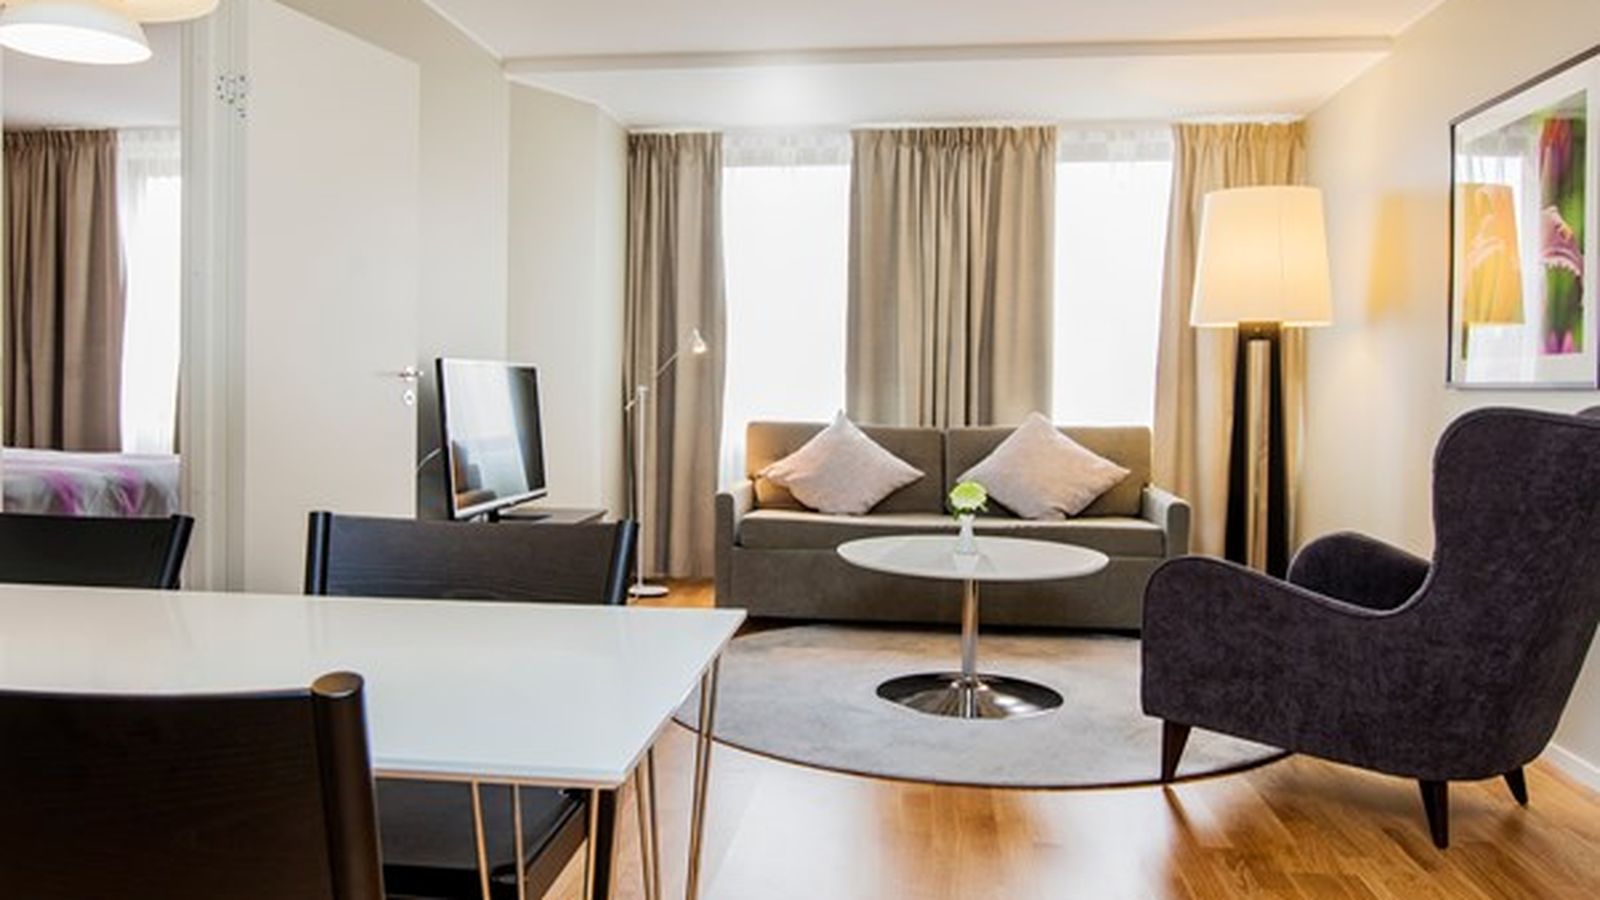 Ledig lägenhet Stockholm 2 rum (50 kvm) - 24995 kr/mån | Hyresmaklaren.se